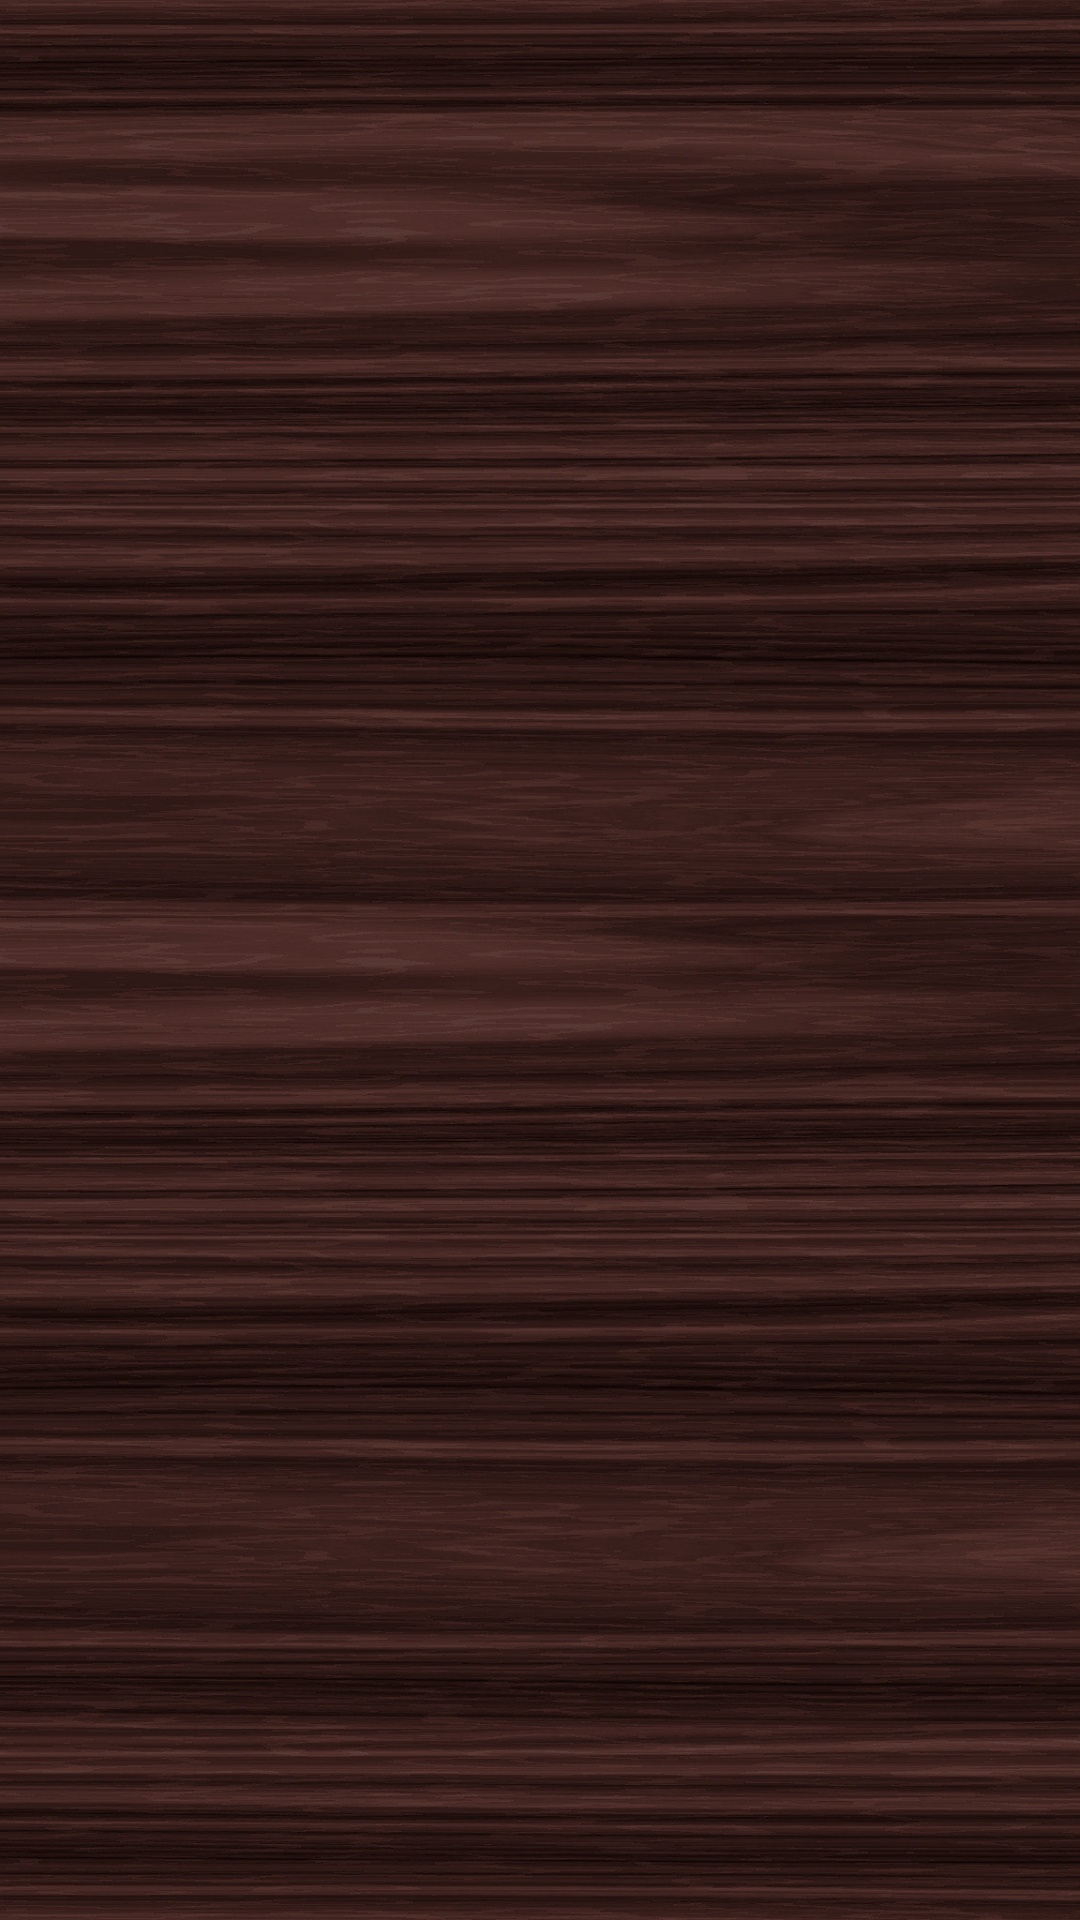 Rot-schwarz Gestreiftes Textil. Wallpaper in 1080x1920 Resolution